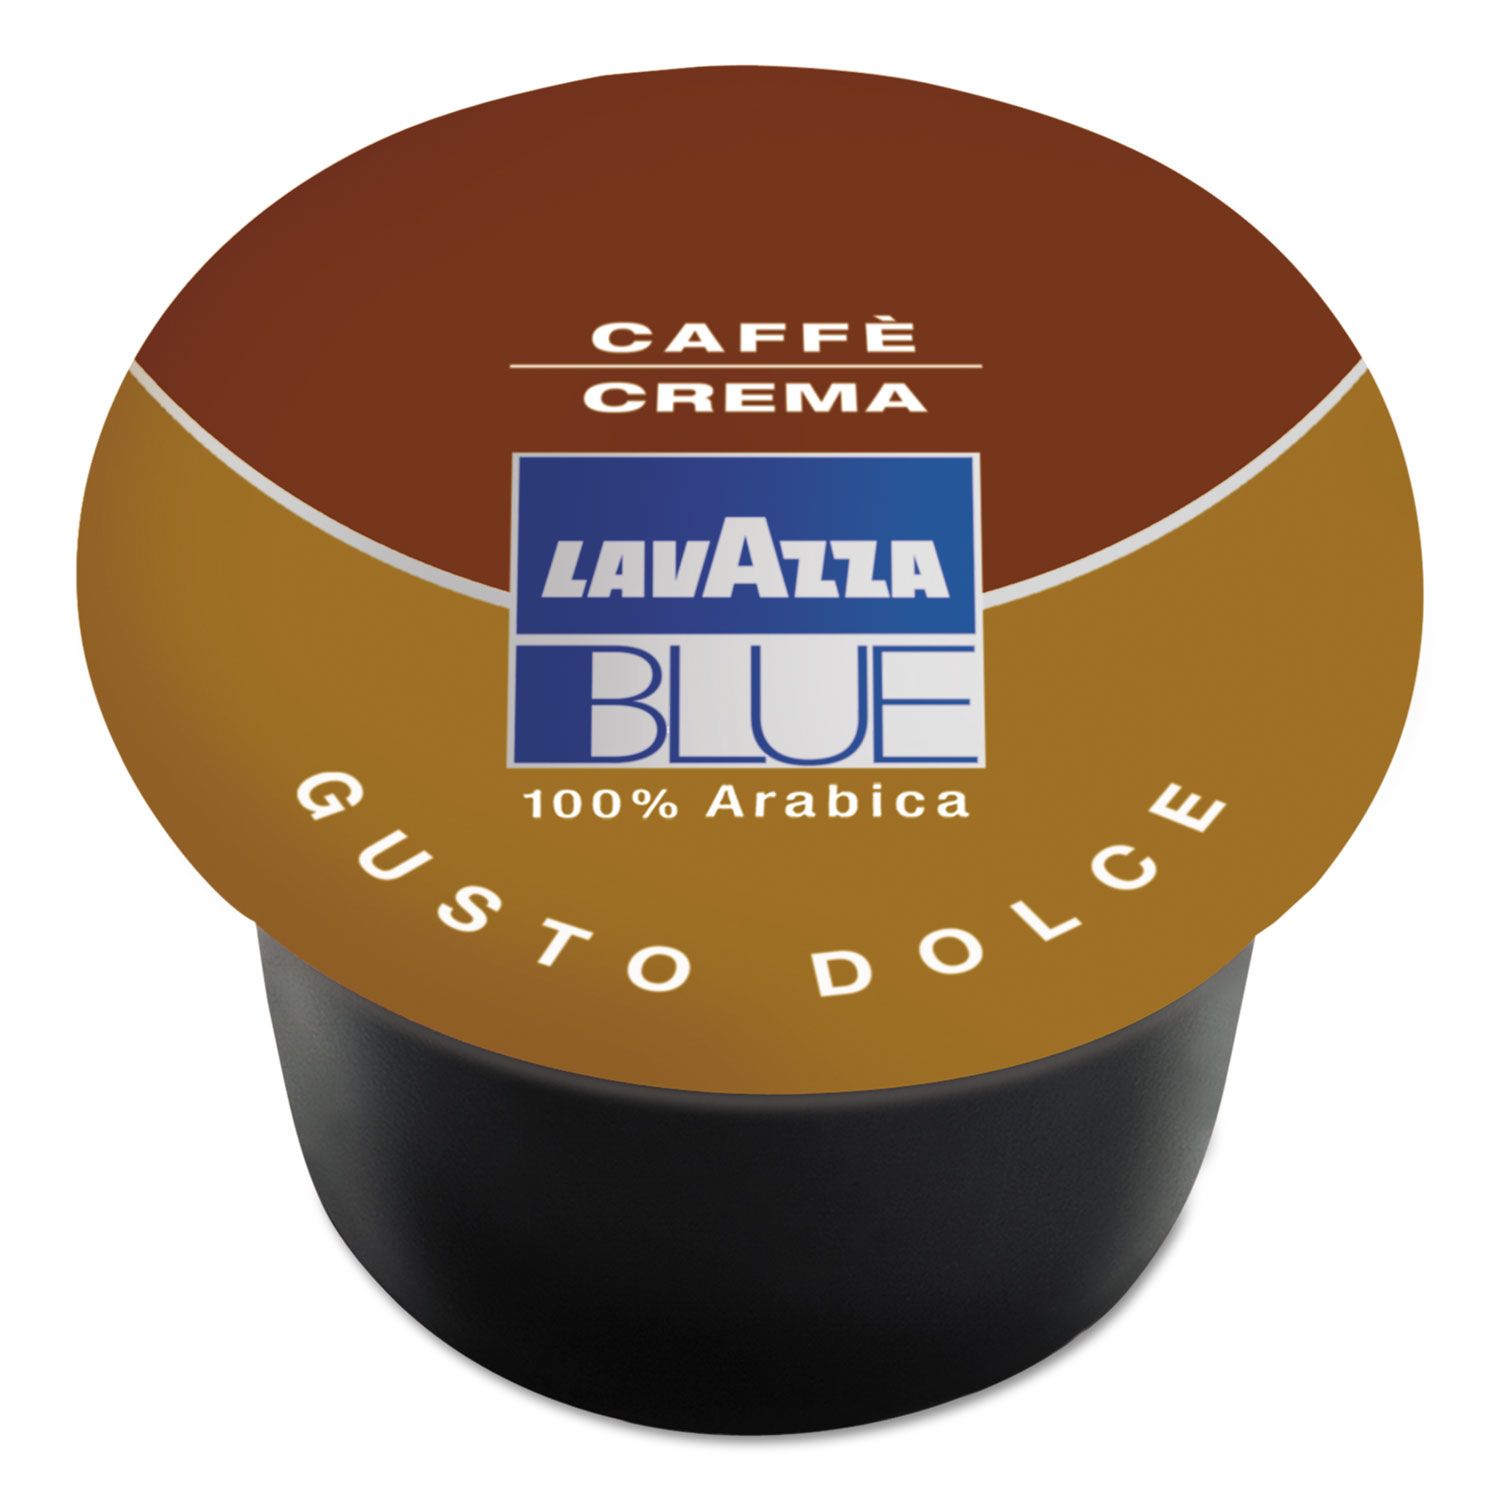  Lavazza LAV970 BLUE Espresso Capsules, Crema Dolce, 8g Capsule, 100/Box (LAV970) 